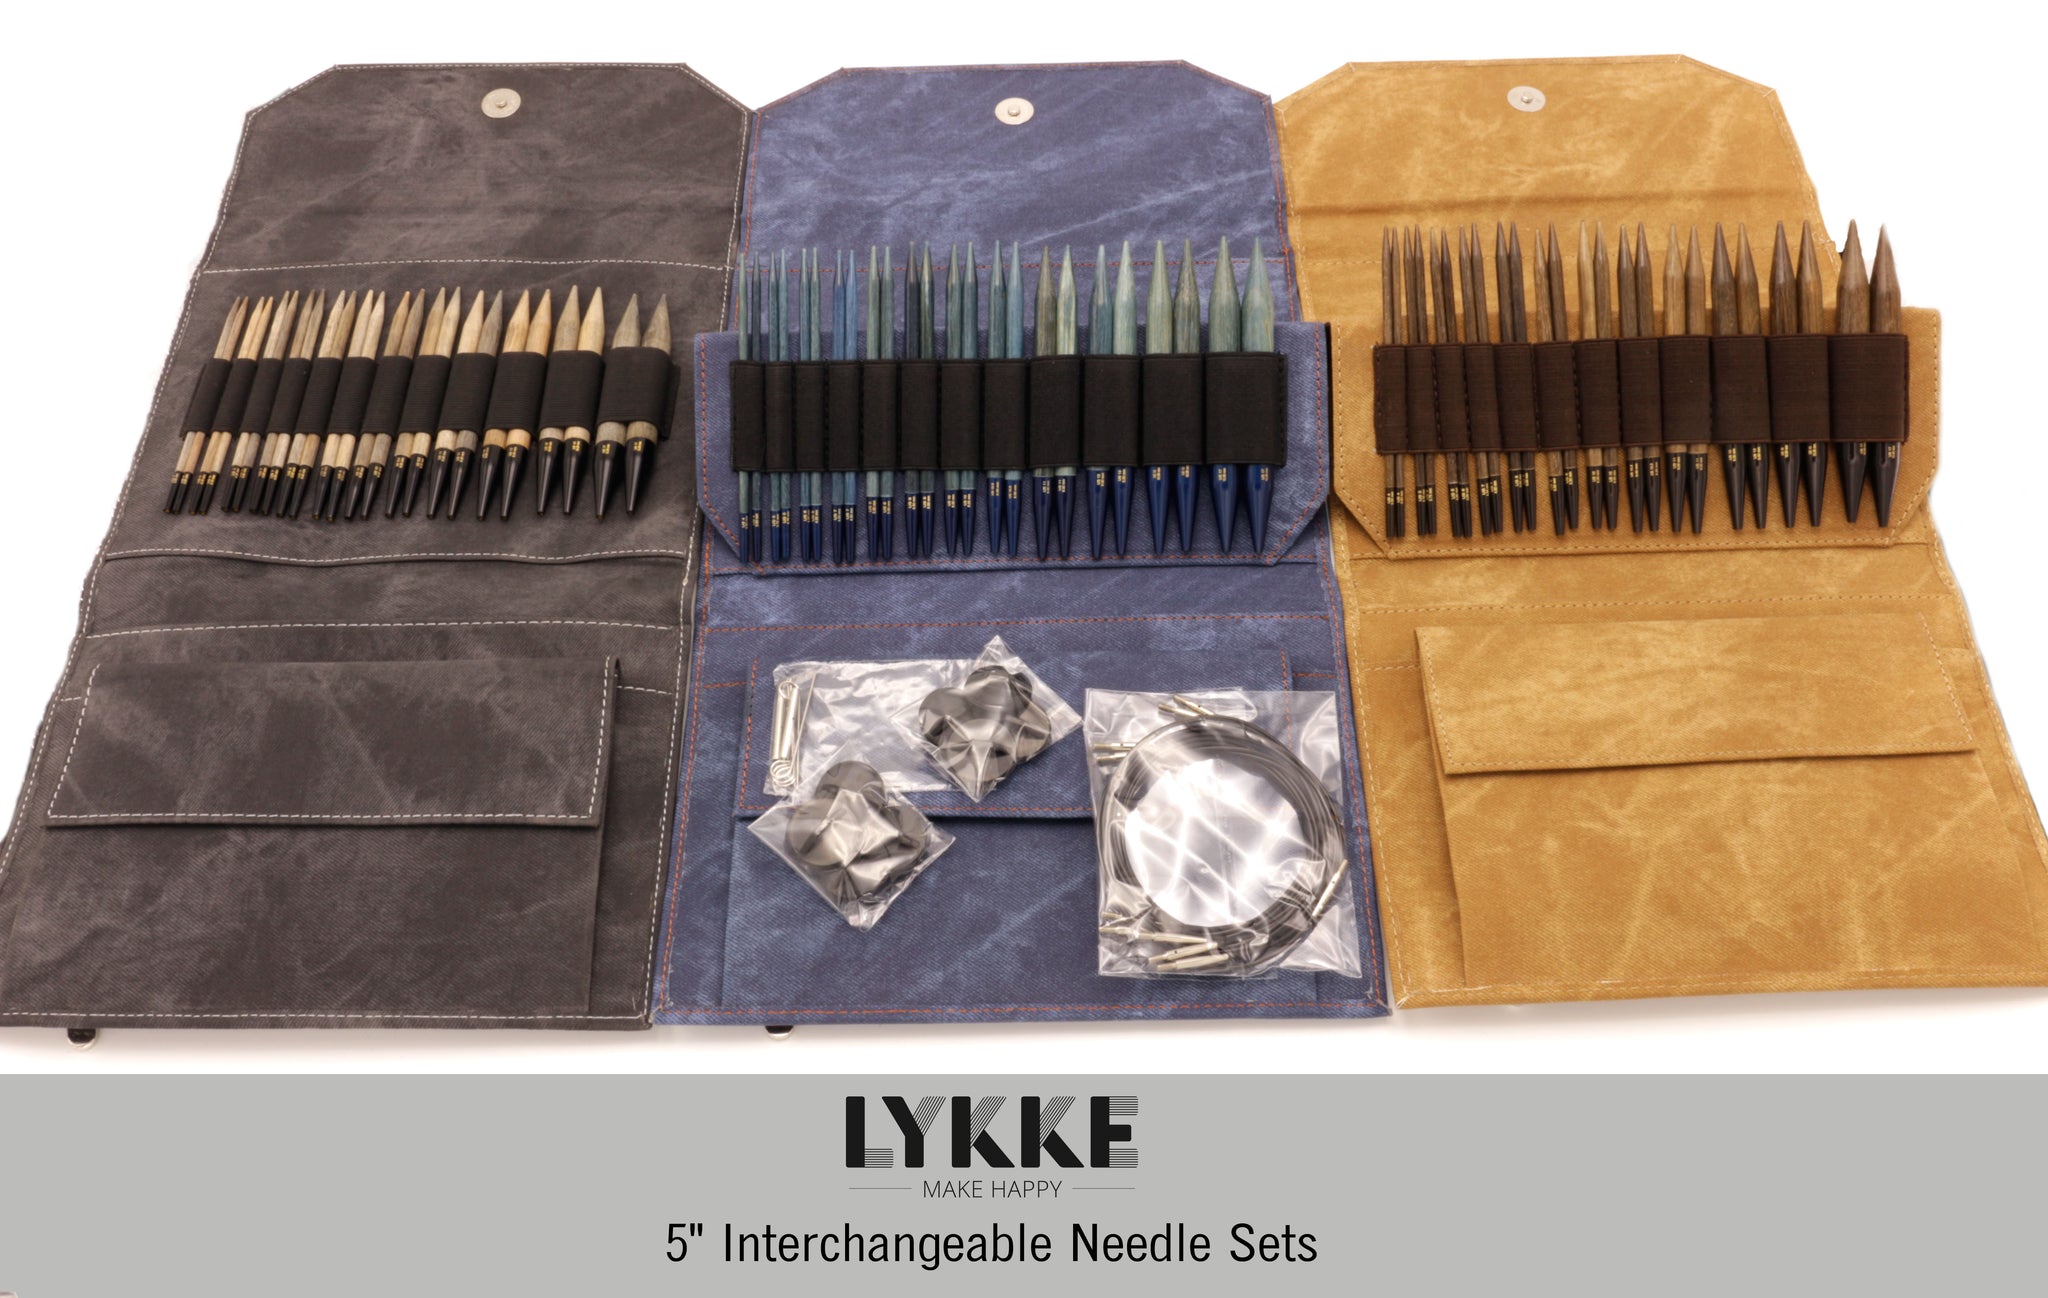 LYKKE - Umber 5 Interchangeable Needle Set (US 4-17)